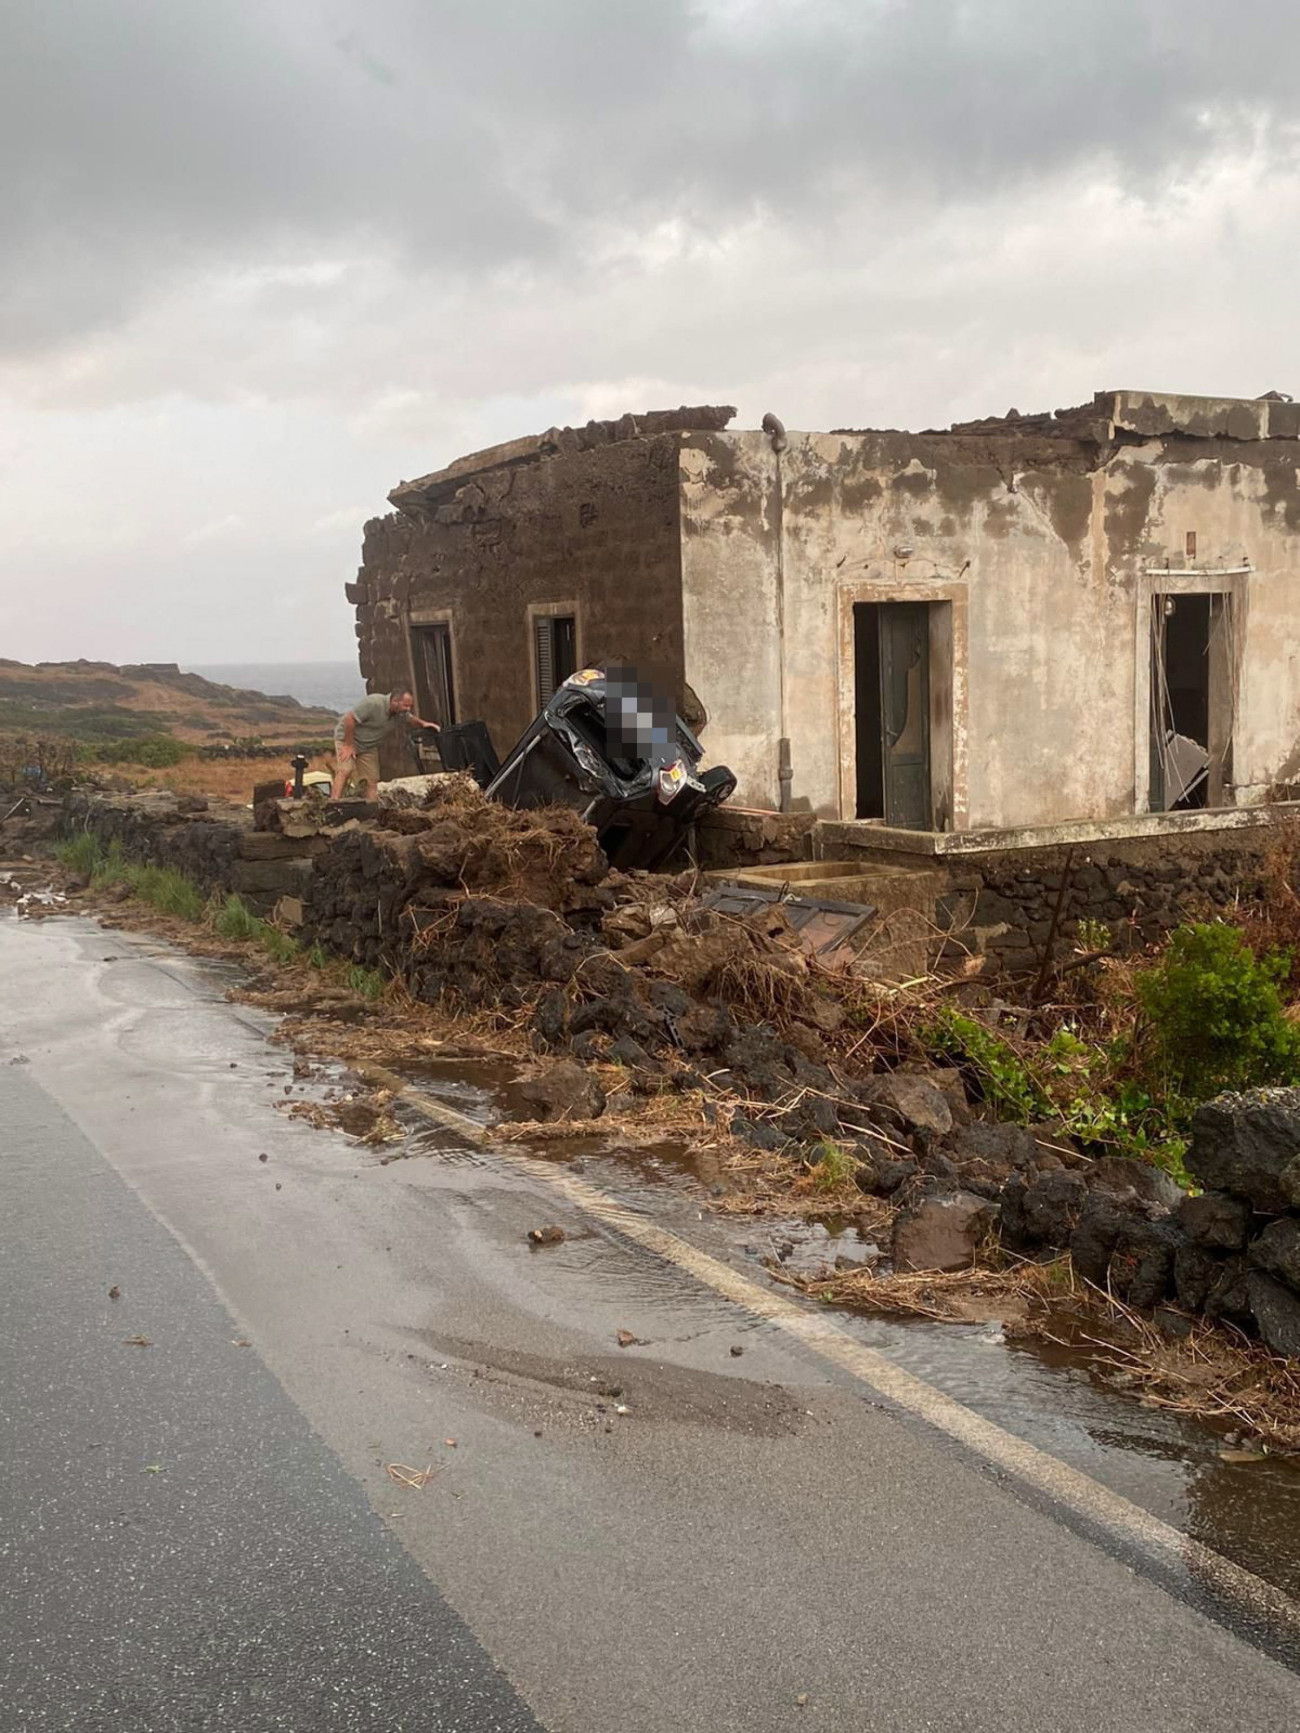 Pantelleria szigete, 2021. szeptember 10.
Az olasz polgári védelem sajtószolgálata által közreadott kép egy tornádó pusztításáról a Szicília közelében fekvő Pantelleria szigetén 2021. szeptember 10-én. A mentőalakulatok tagjainak közlése szerint két személy meghalt, kilencen megsérültek és néhány embert még keresnek.
MTI/EPA/ANSA/Olasz polgári védelem sajtószolgálata